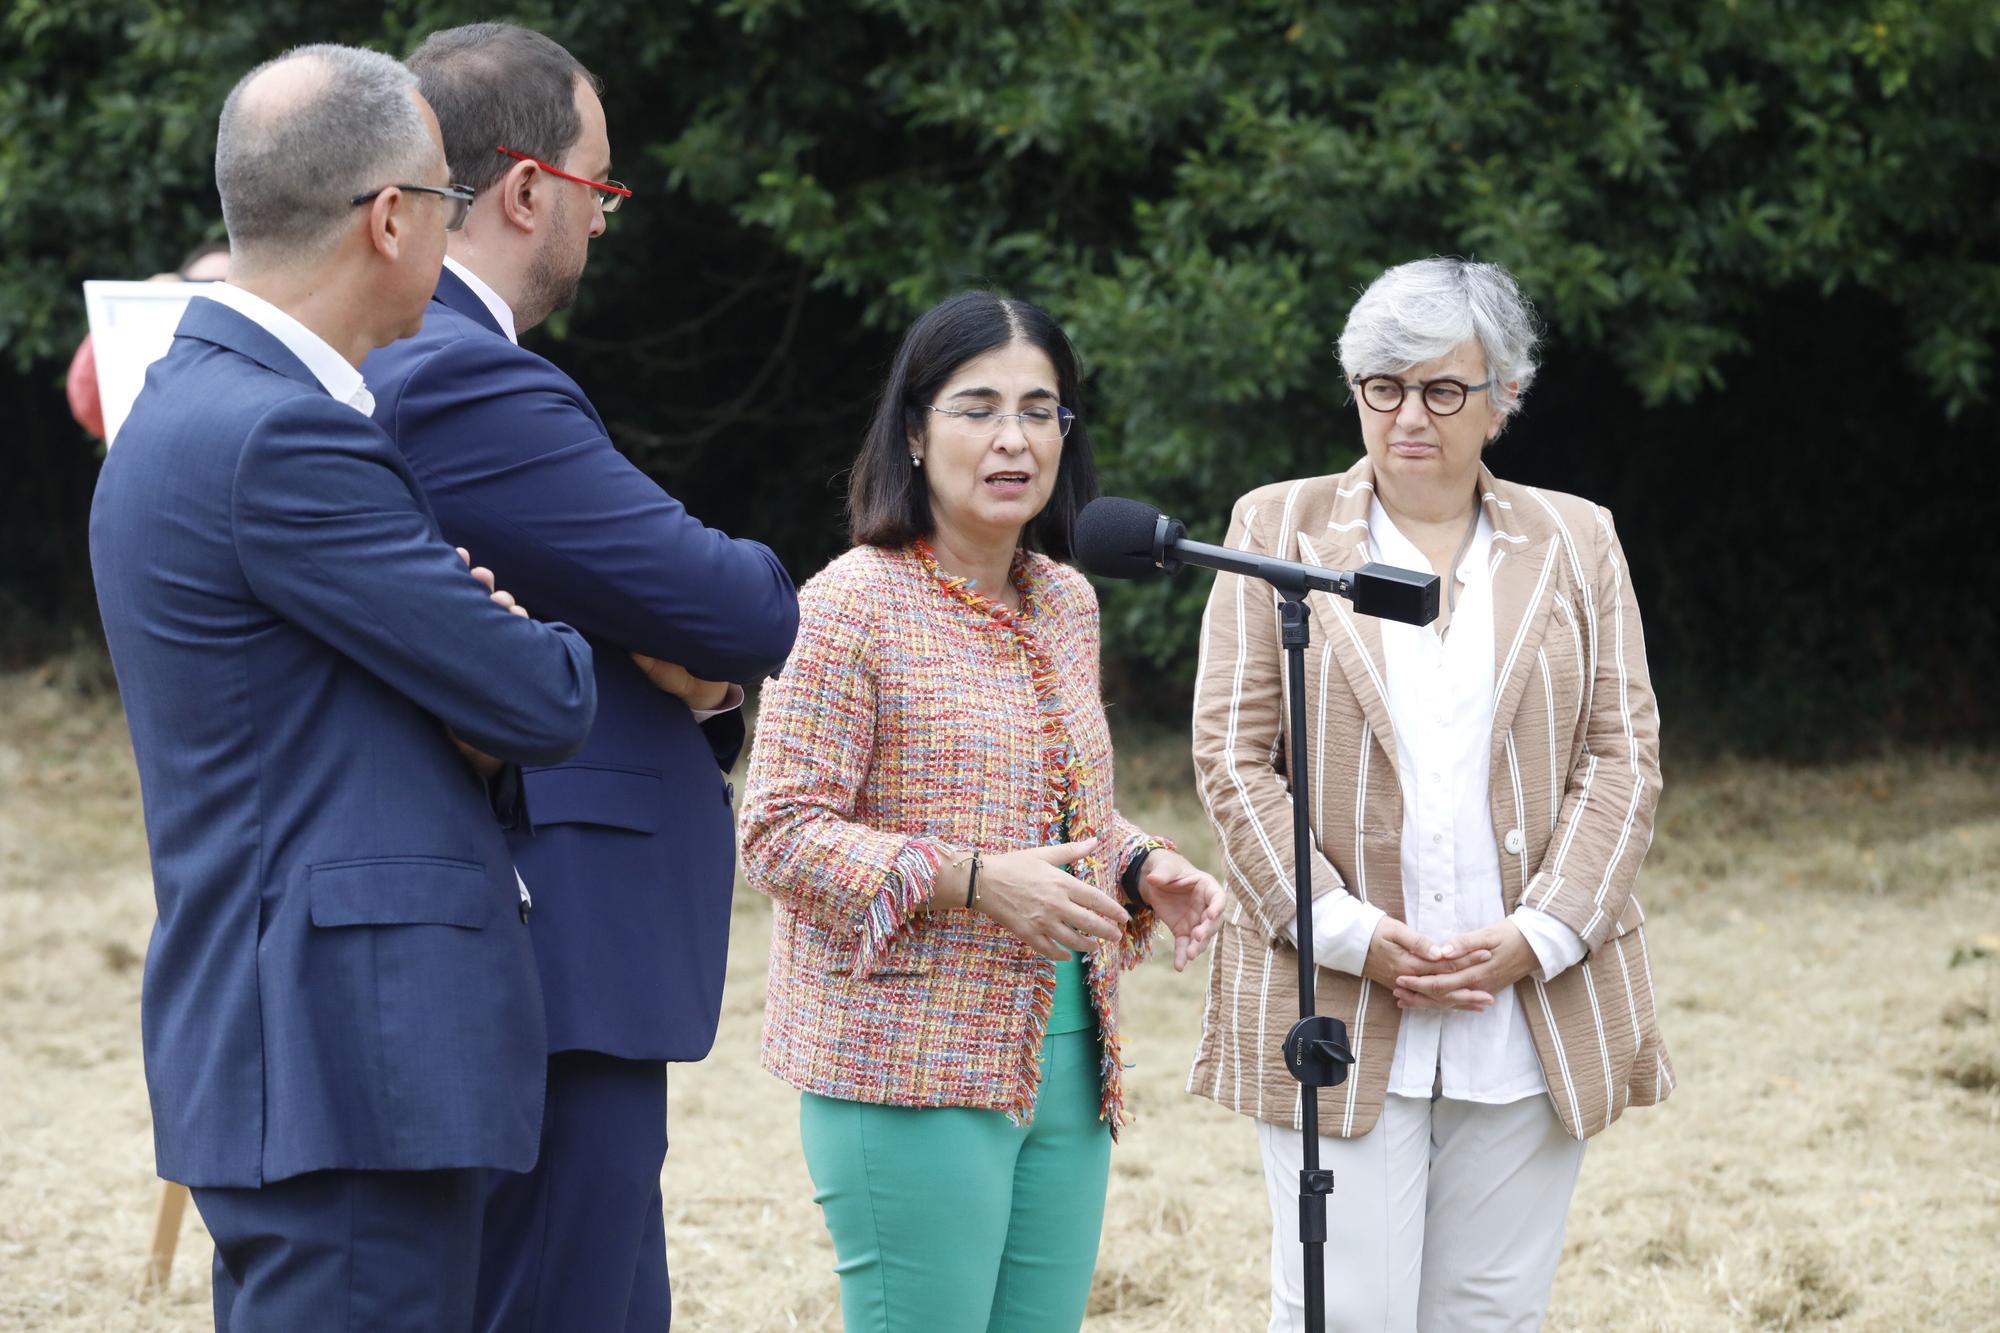 En imágenes: La ministra de Sanidad, Carolina Darias, de visita en Gijón